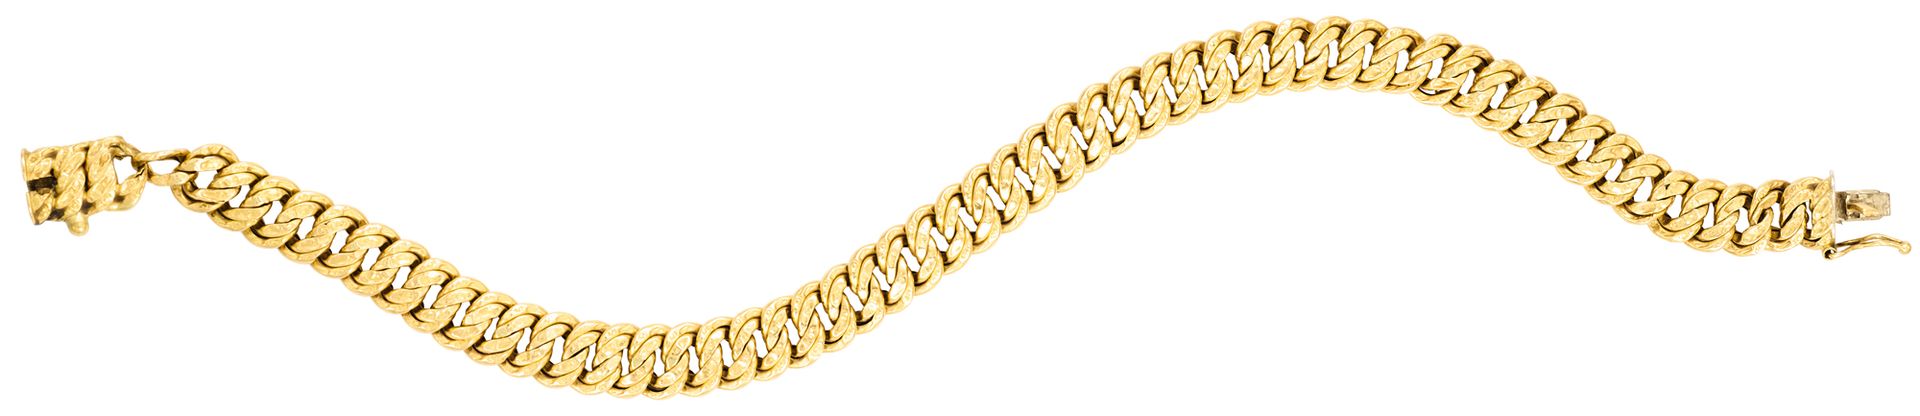 Bracelet aus Gelbgold, amerikanische Masche beschädigt (M,C).
L: 21 cm
Pb: 9,94 &hellip;